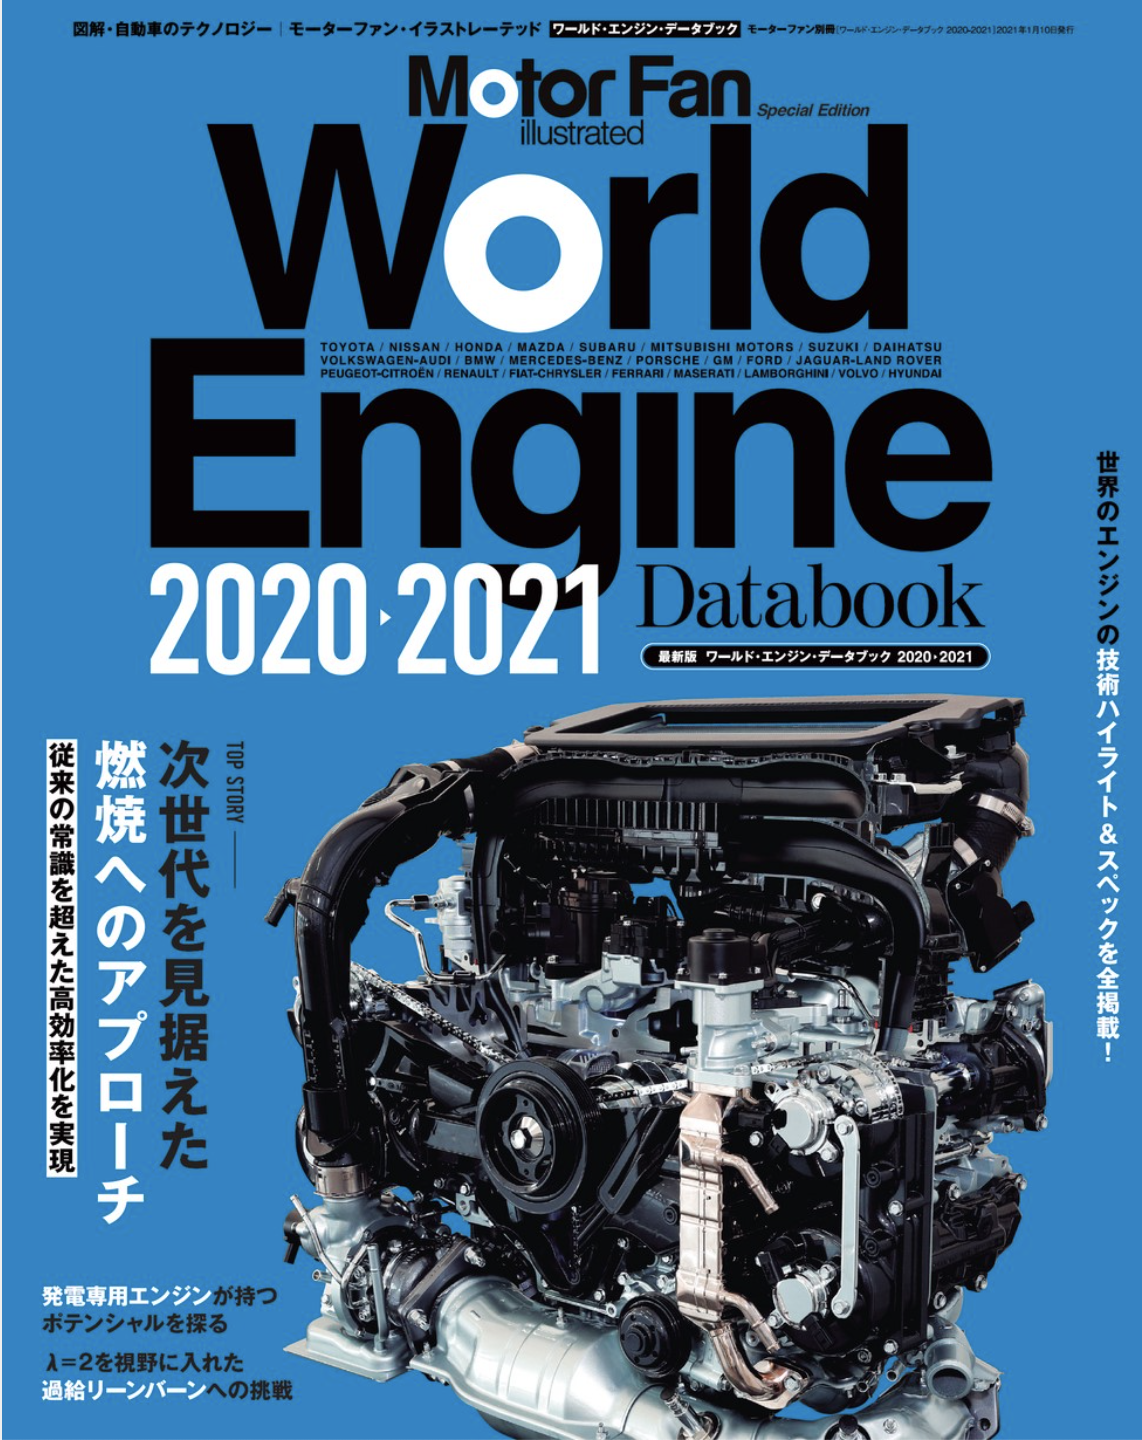 エンジンは終わらない モーターファン イラストレーテッド Mfi 特別編集 ワールド エンジン データブック 21 好評販売中 三栄のプレスリリース